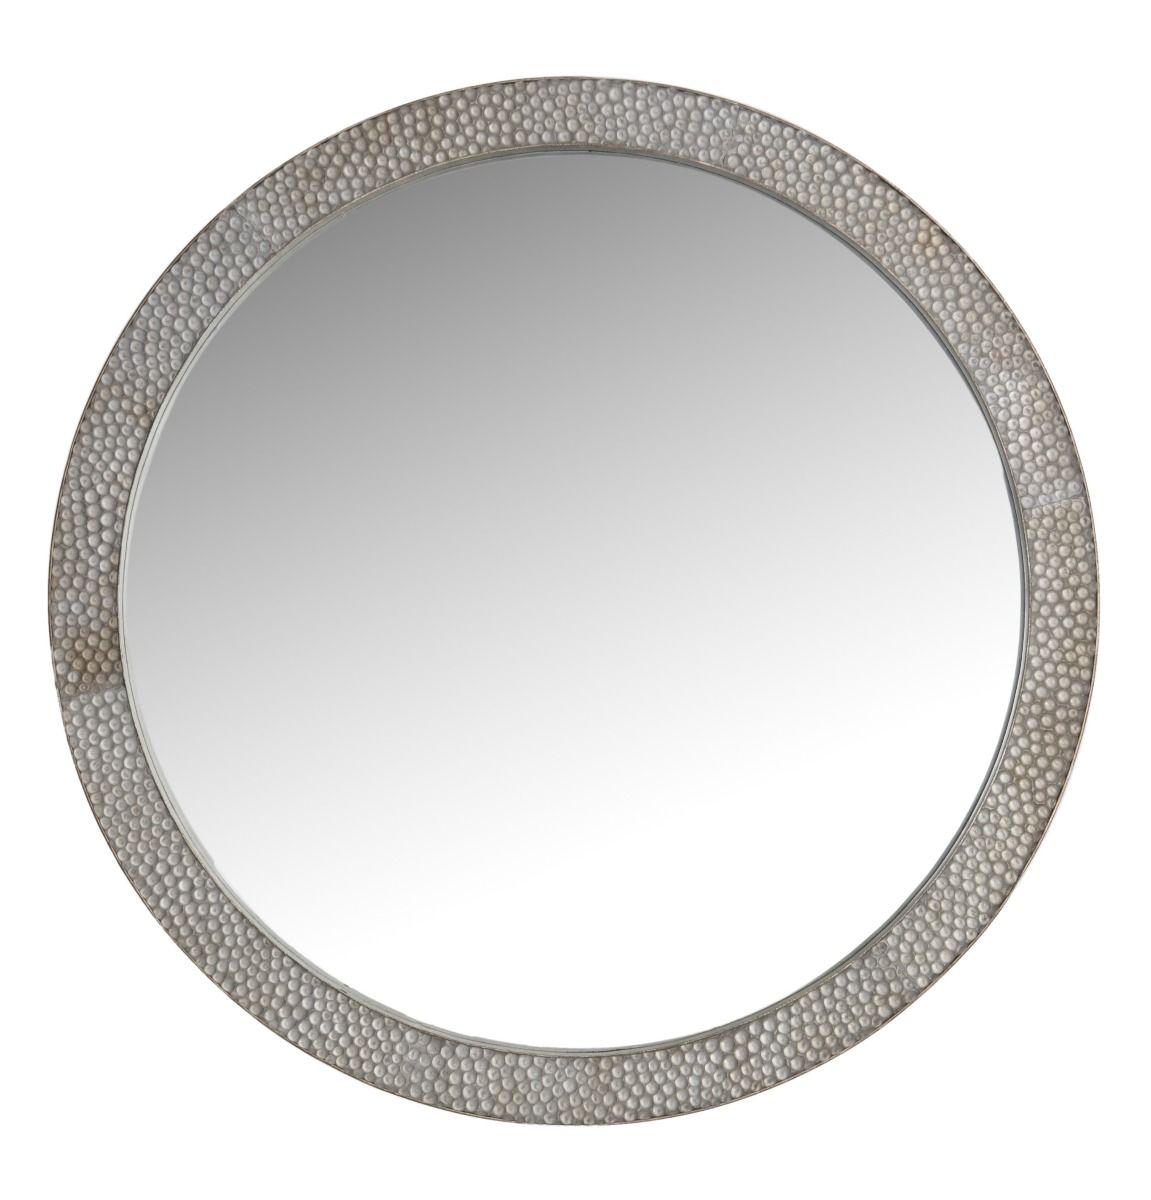 byrn mirror antiqued silver